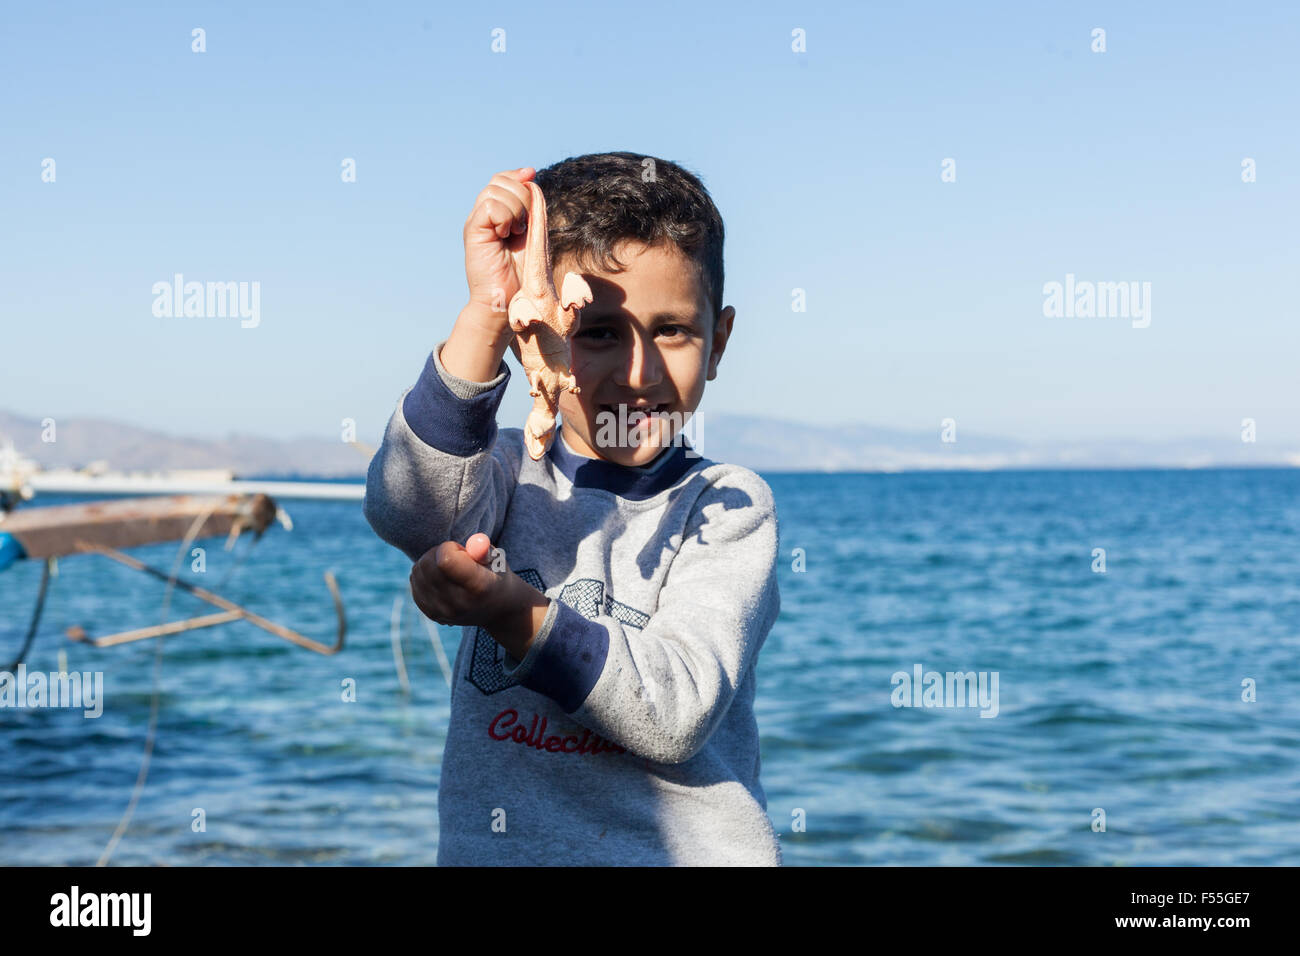 Afghane, figlio di immigrati nel costo di Kos (Grecia) il 26 di ottobre, lunedì. Foto Stock